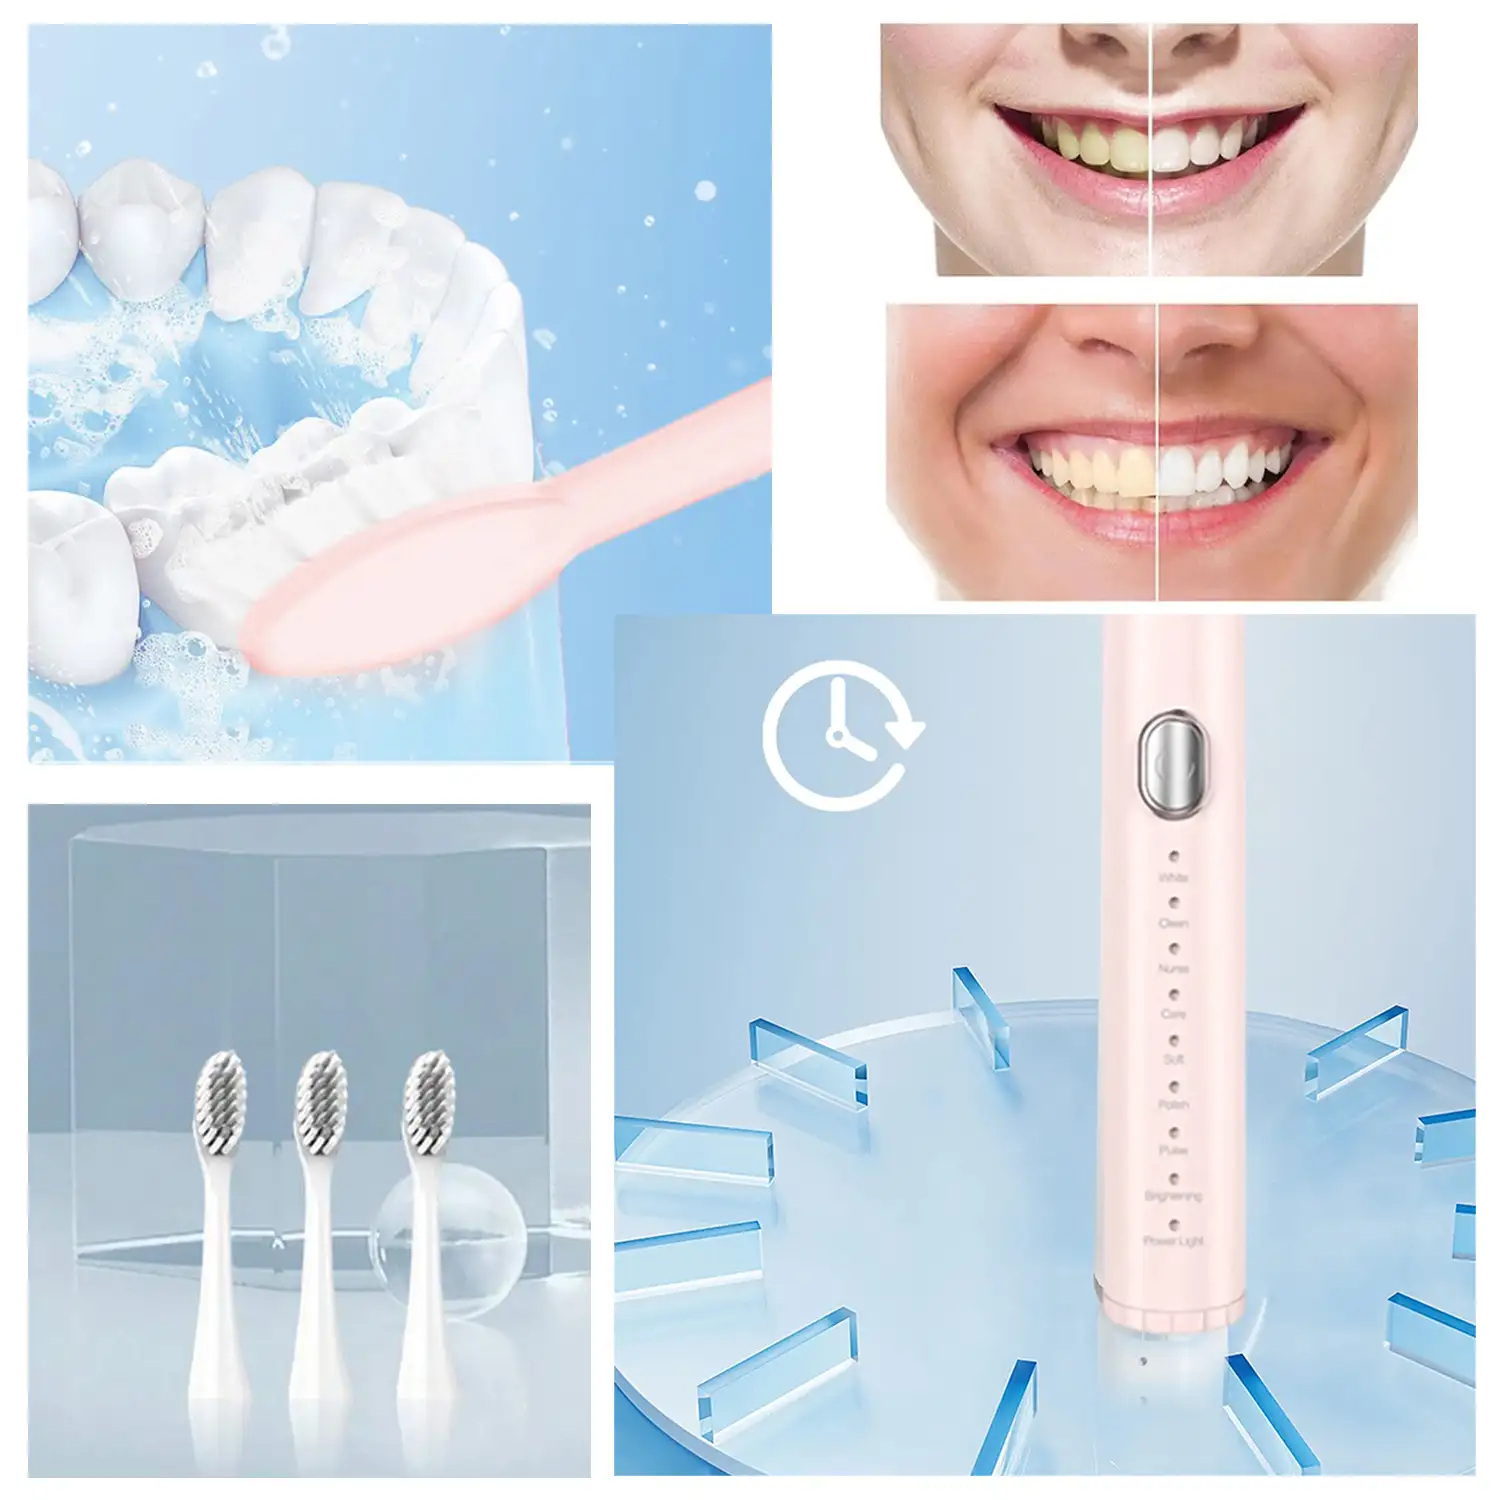 Cepillo de dientes eléctrico sónico, para adultos, con 8 funciones para tu salud y belleza bucal. Modelo recargable.